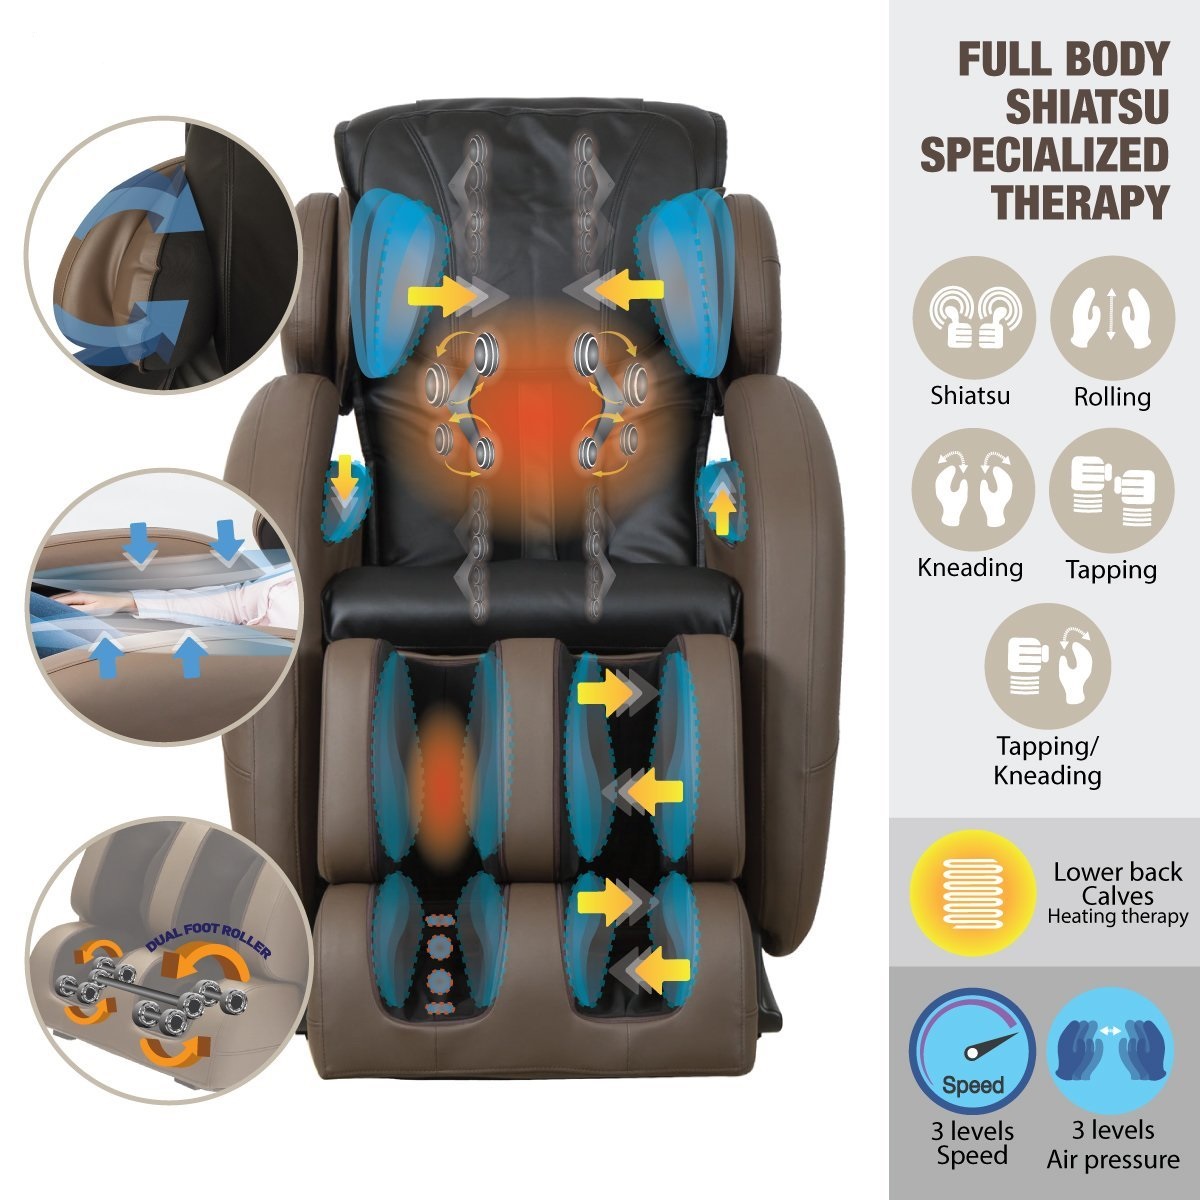 ghế massage cho người bị đau lưng nên sử dụng chế độ nào